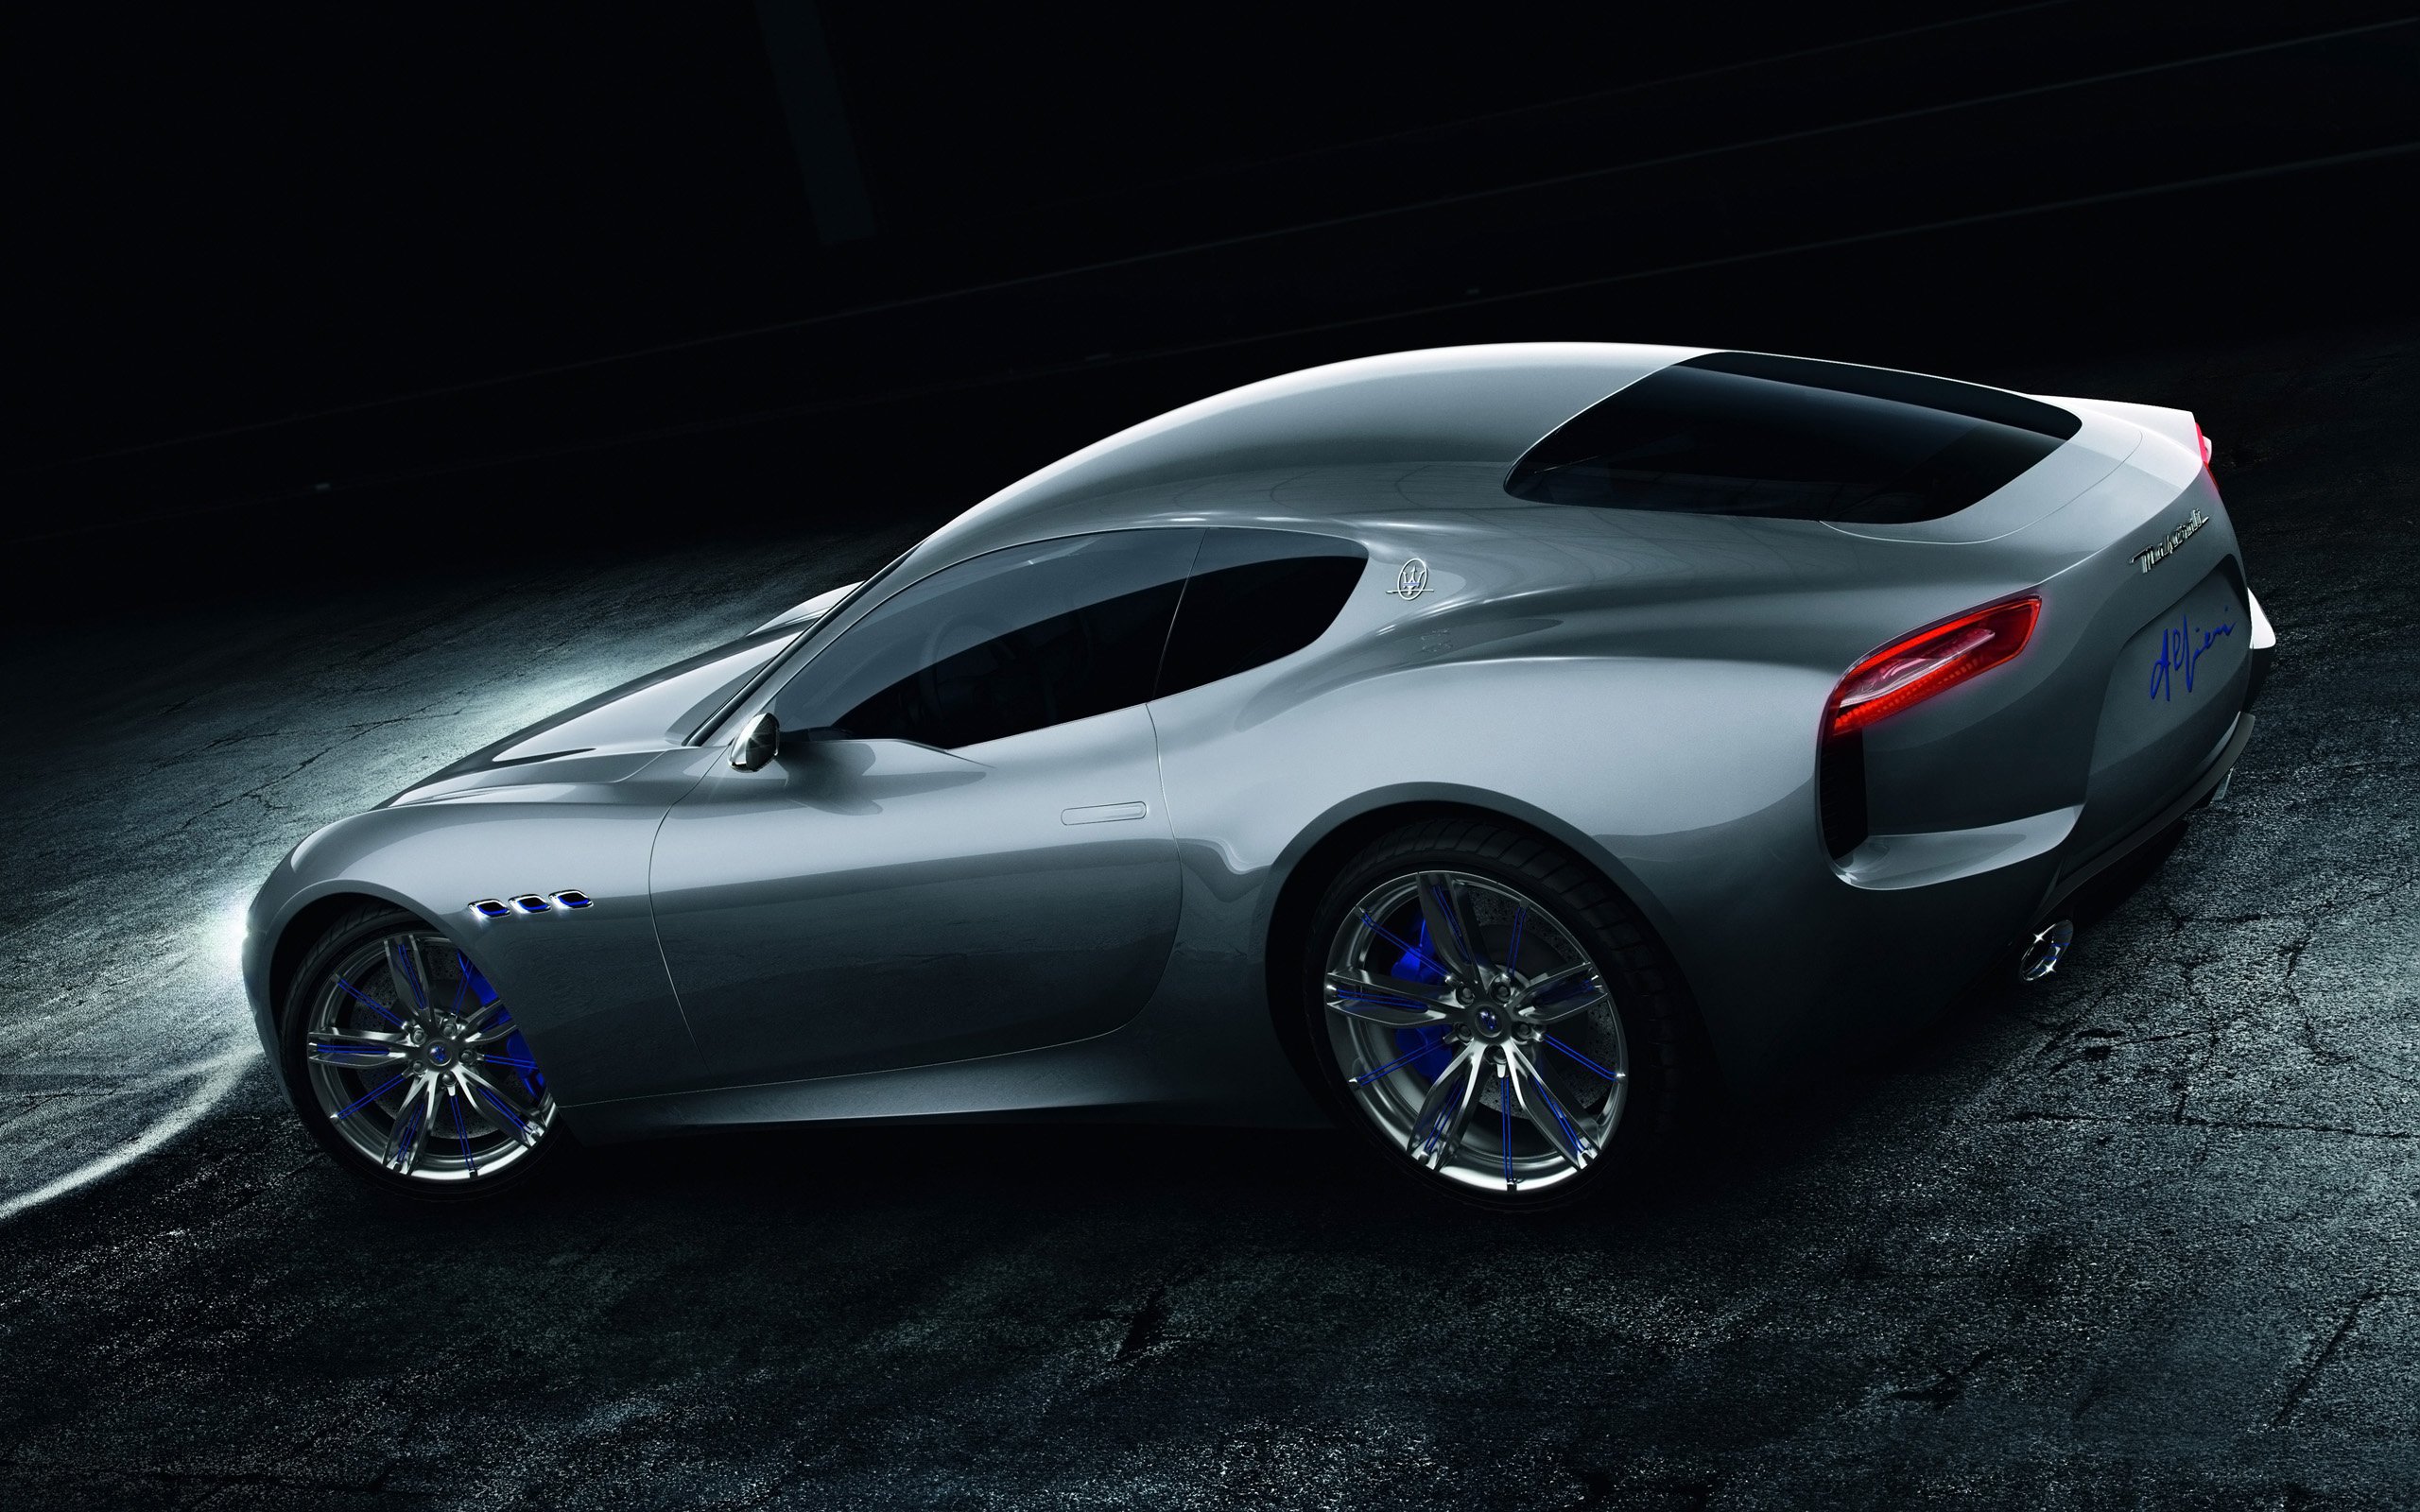 2014, Maserati, Alfieri, Concept Wallpaper